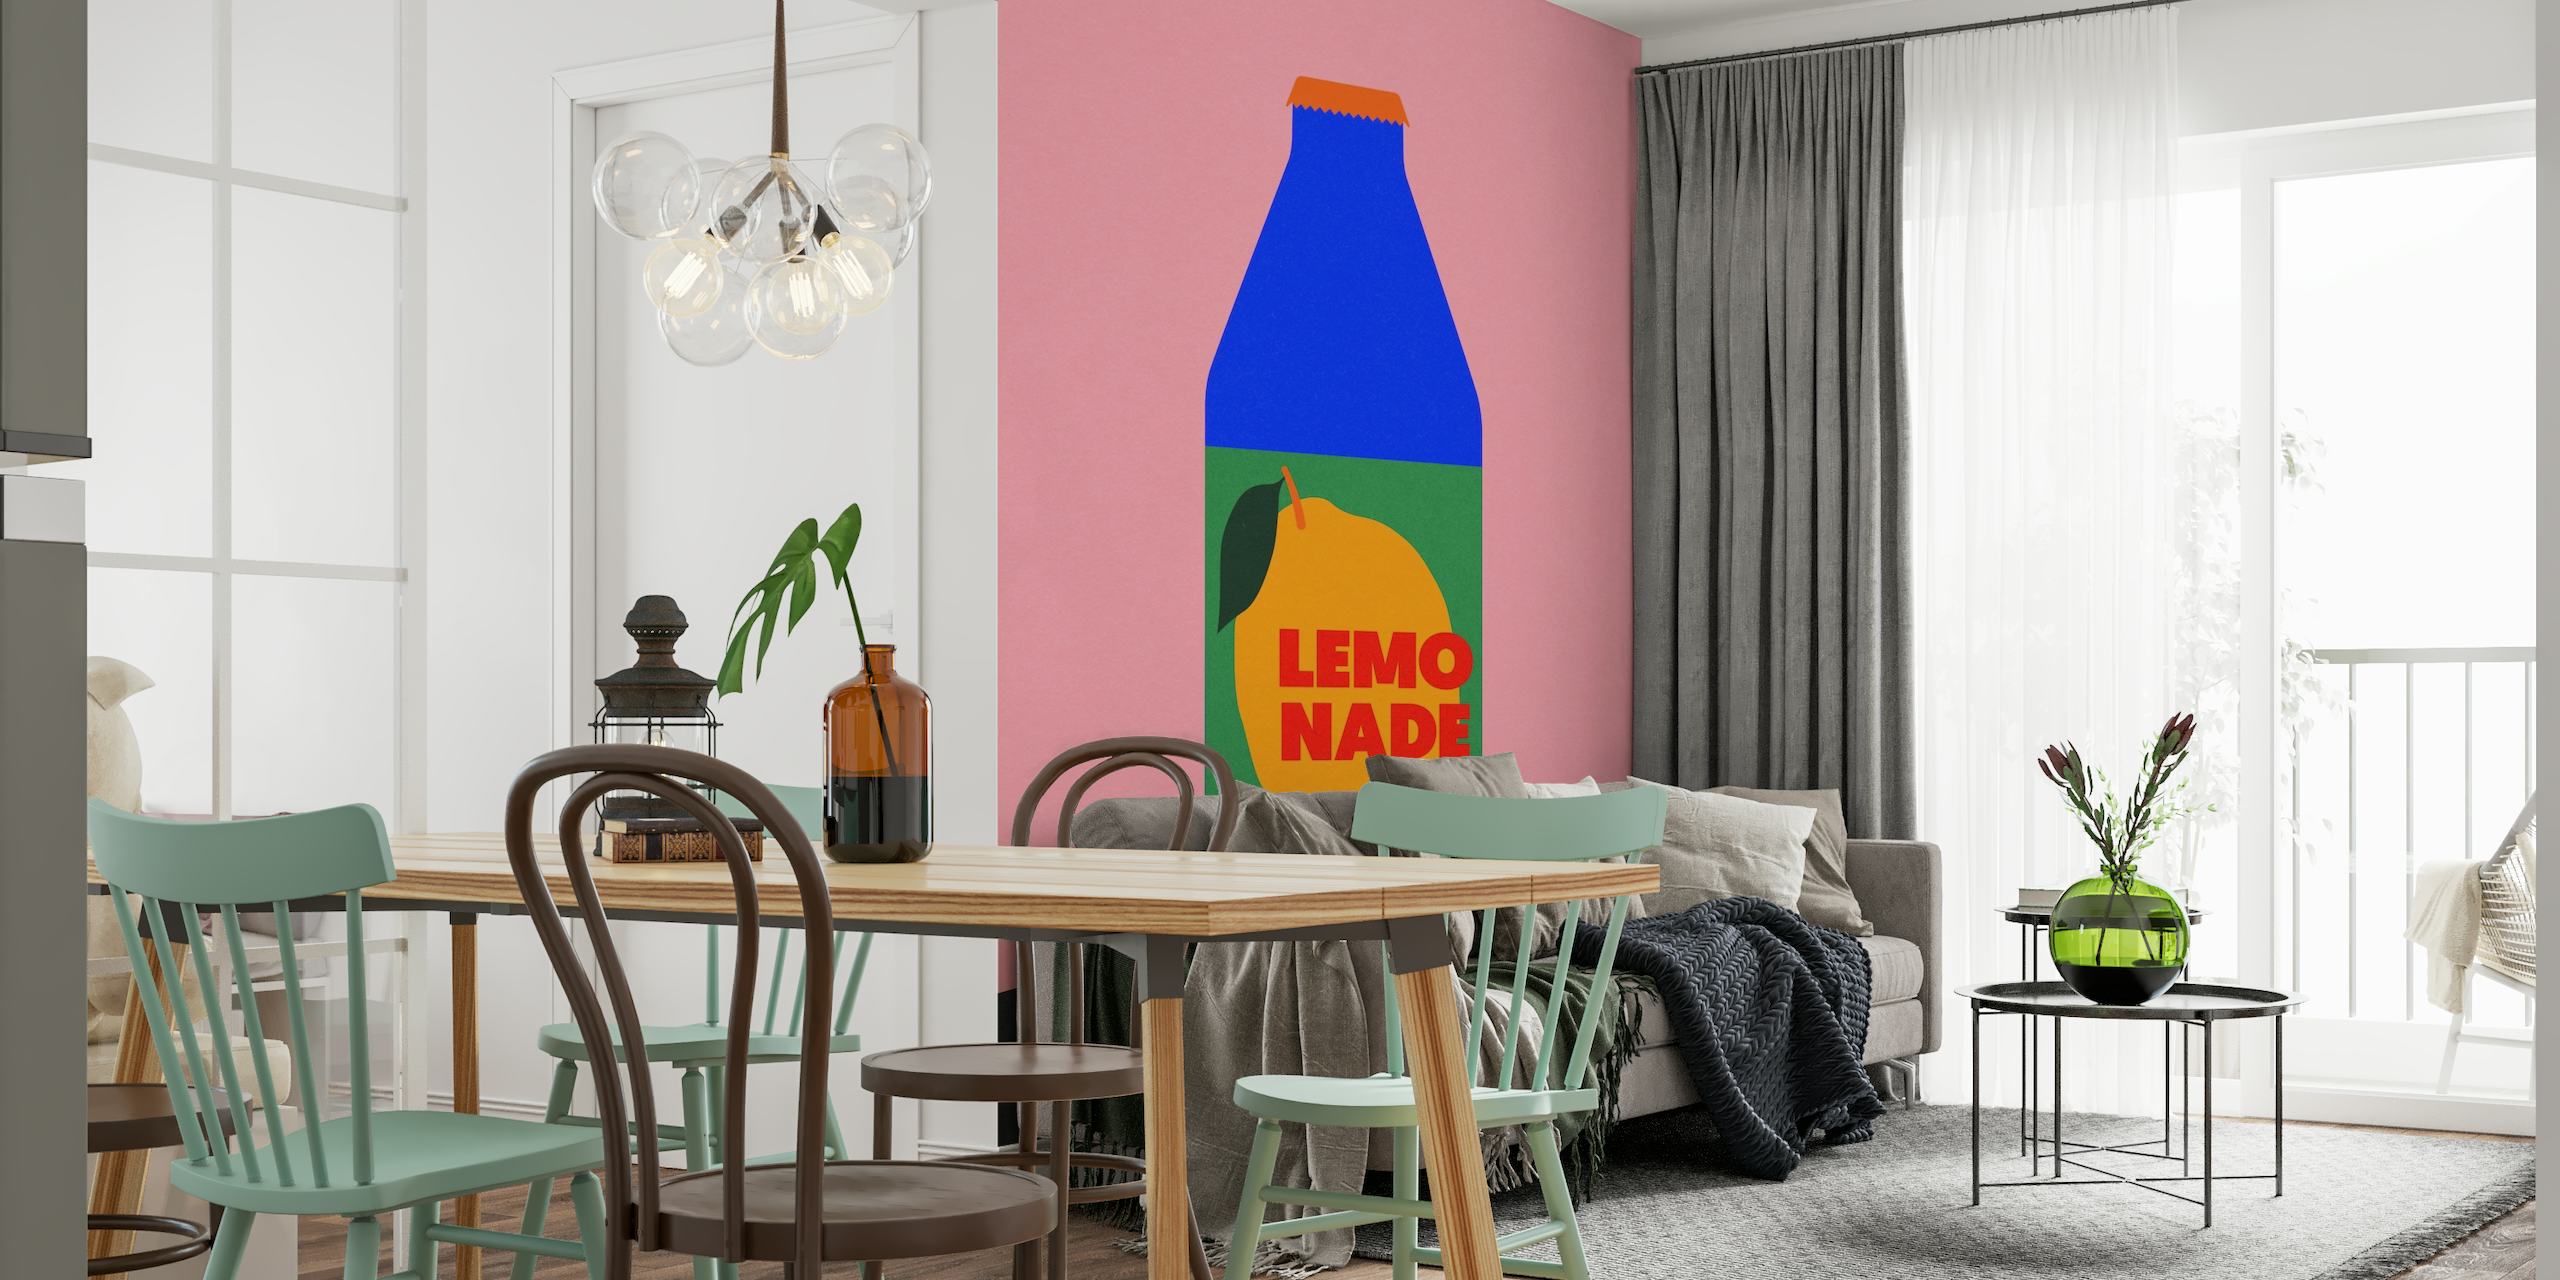 Papier peint moderne 'Lemo Nade' avec fond rose et illustration de bouteille bleue